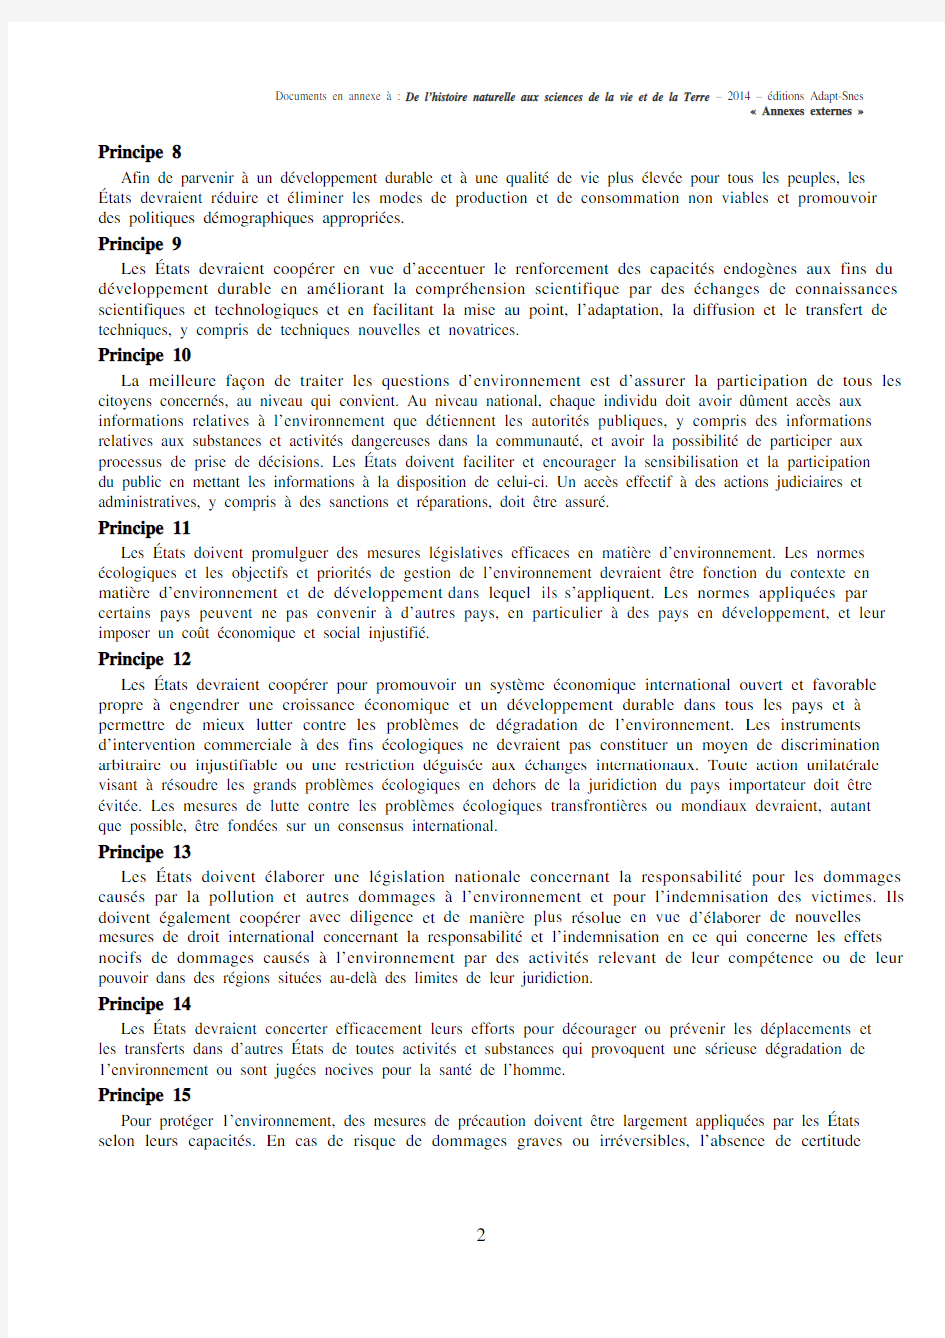 1992年 里约热内卢 环境与发展宣言